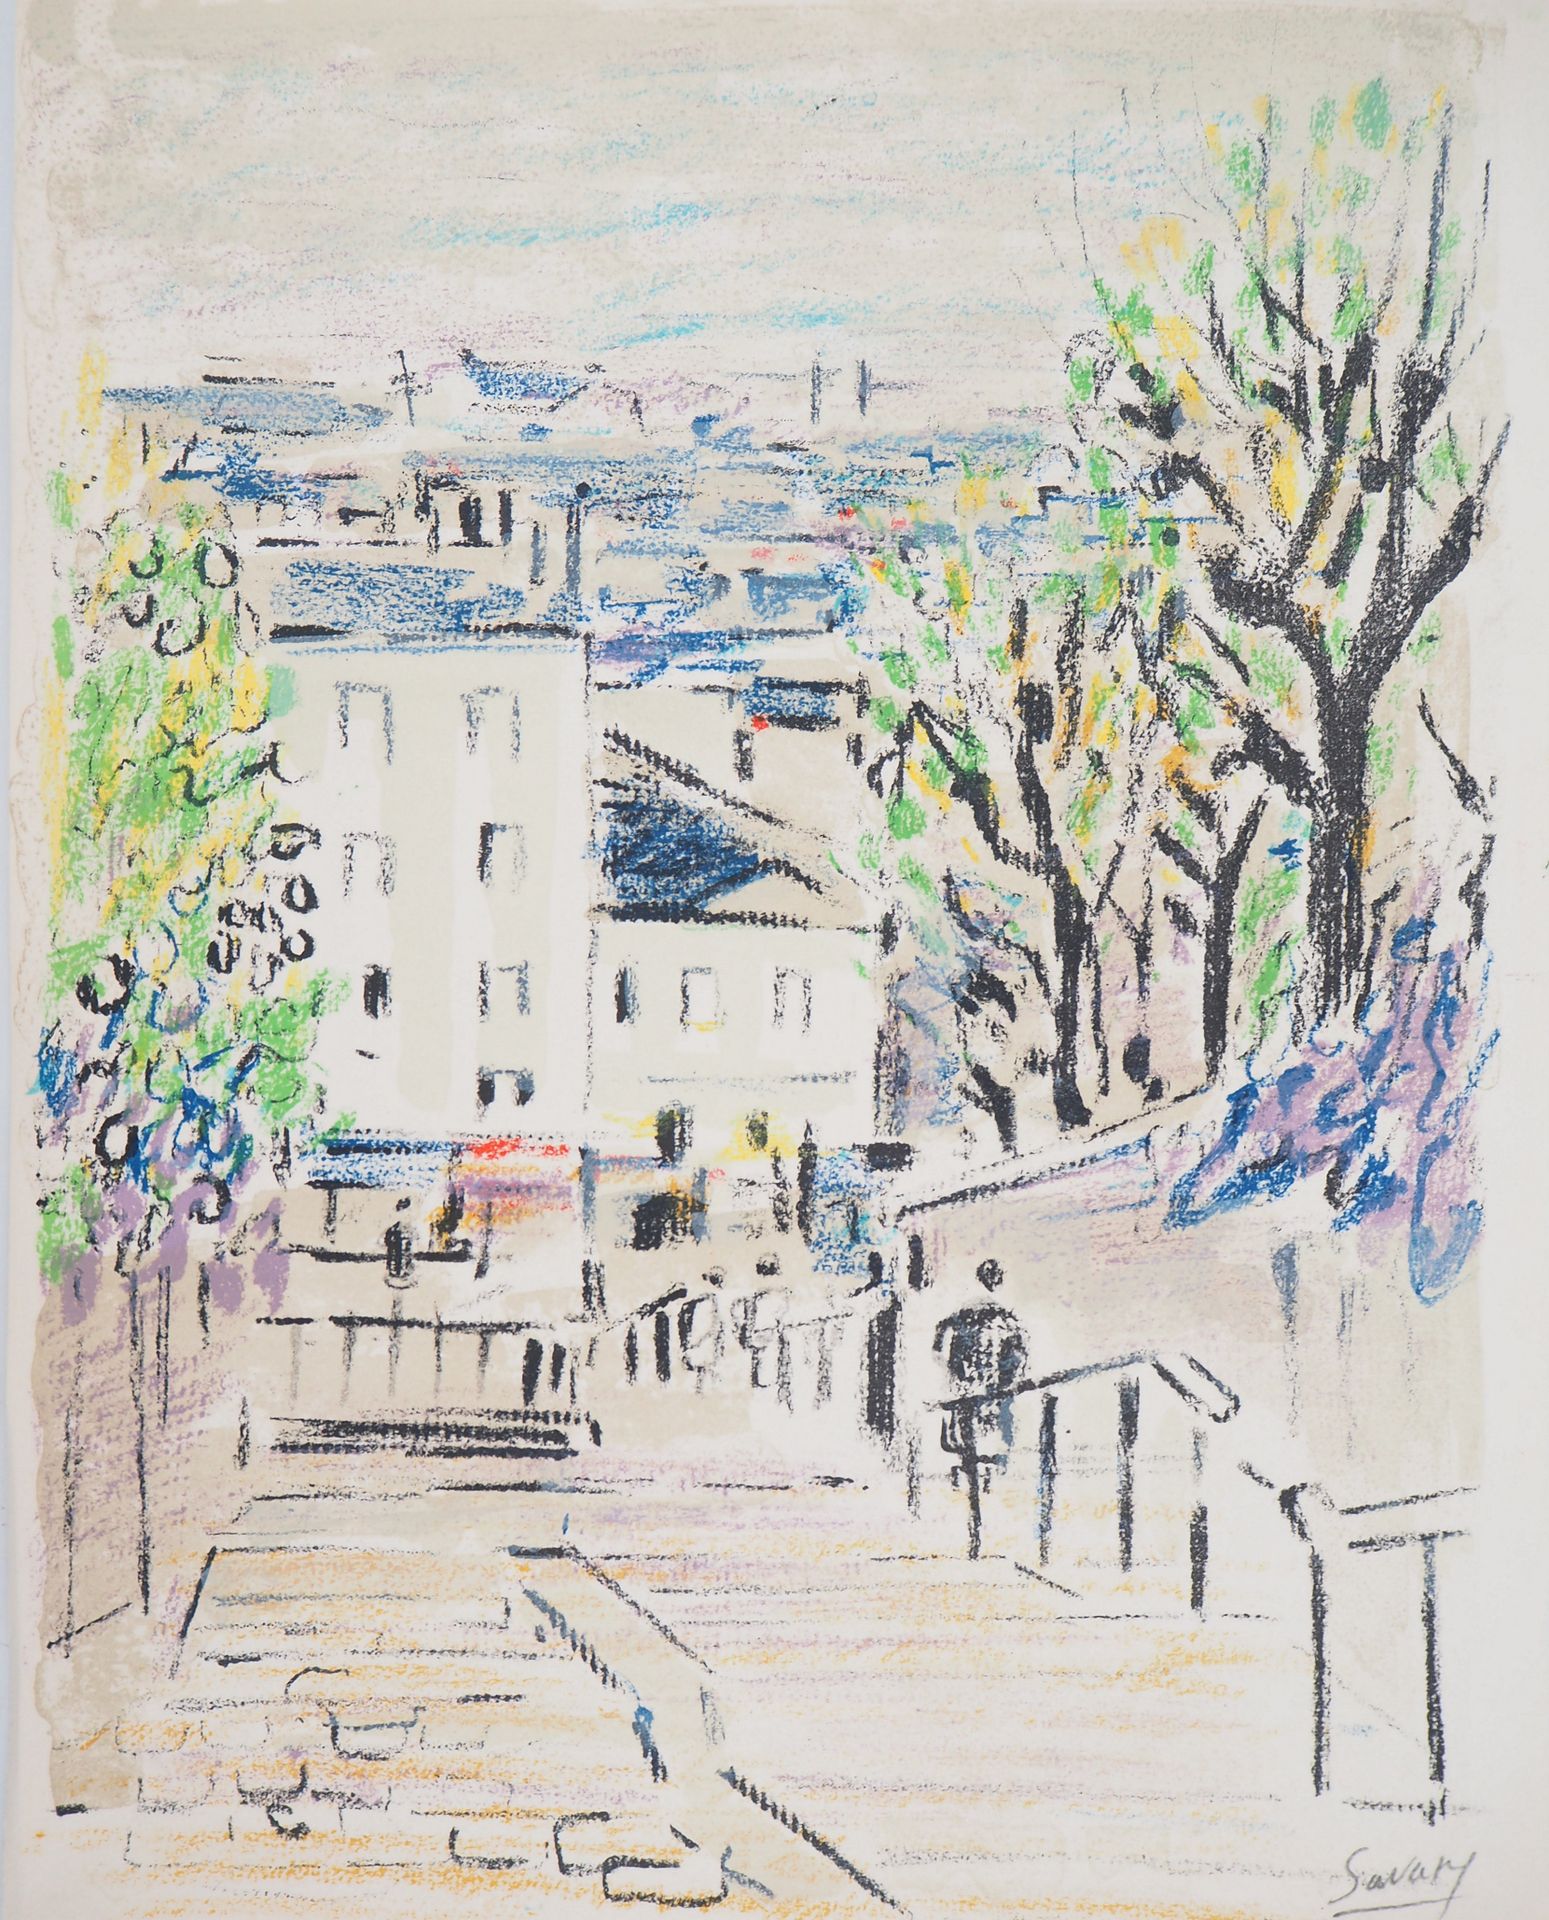 Robert SAVARY 罗伯特-萨瓦里

蒙马特的阶梯（考兰库尔街），1969年

原始石版画（Mourlot工作室）。

右下方有铅笔签名

在Japon&hellip;